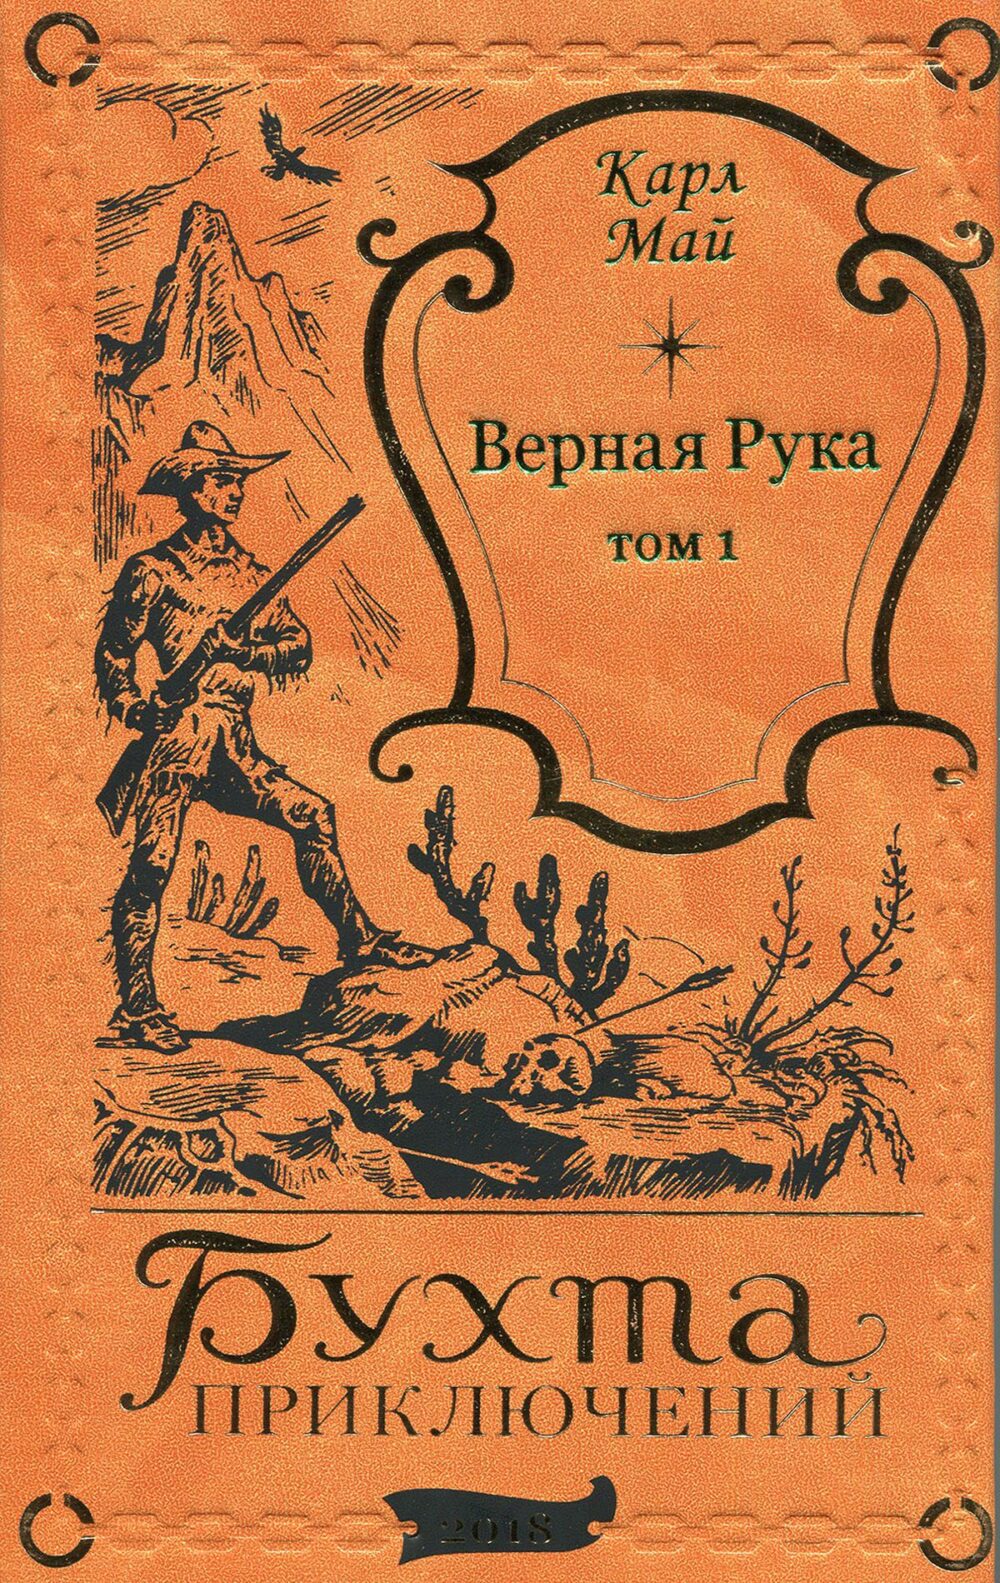 Карл Май "ВЕРНАЯ РУКА" в 2-х томах (комплект)-2821